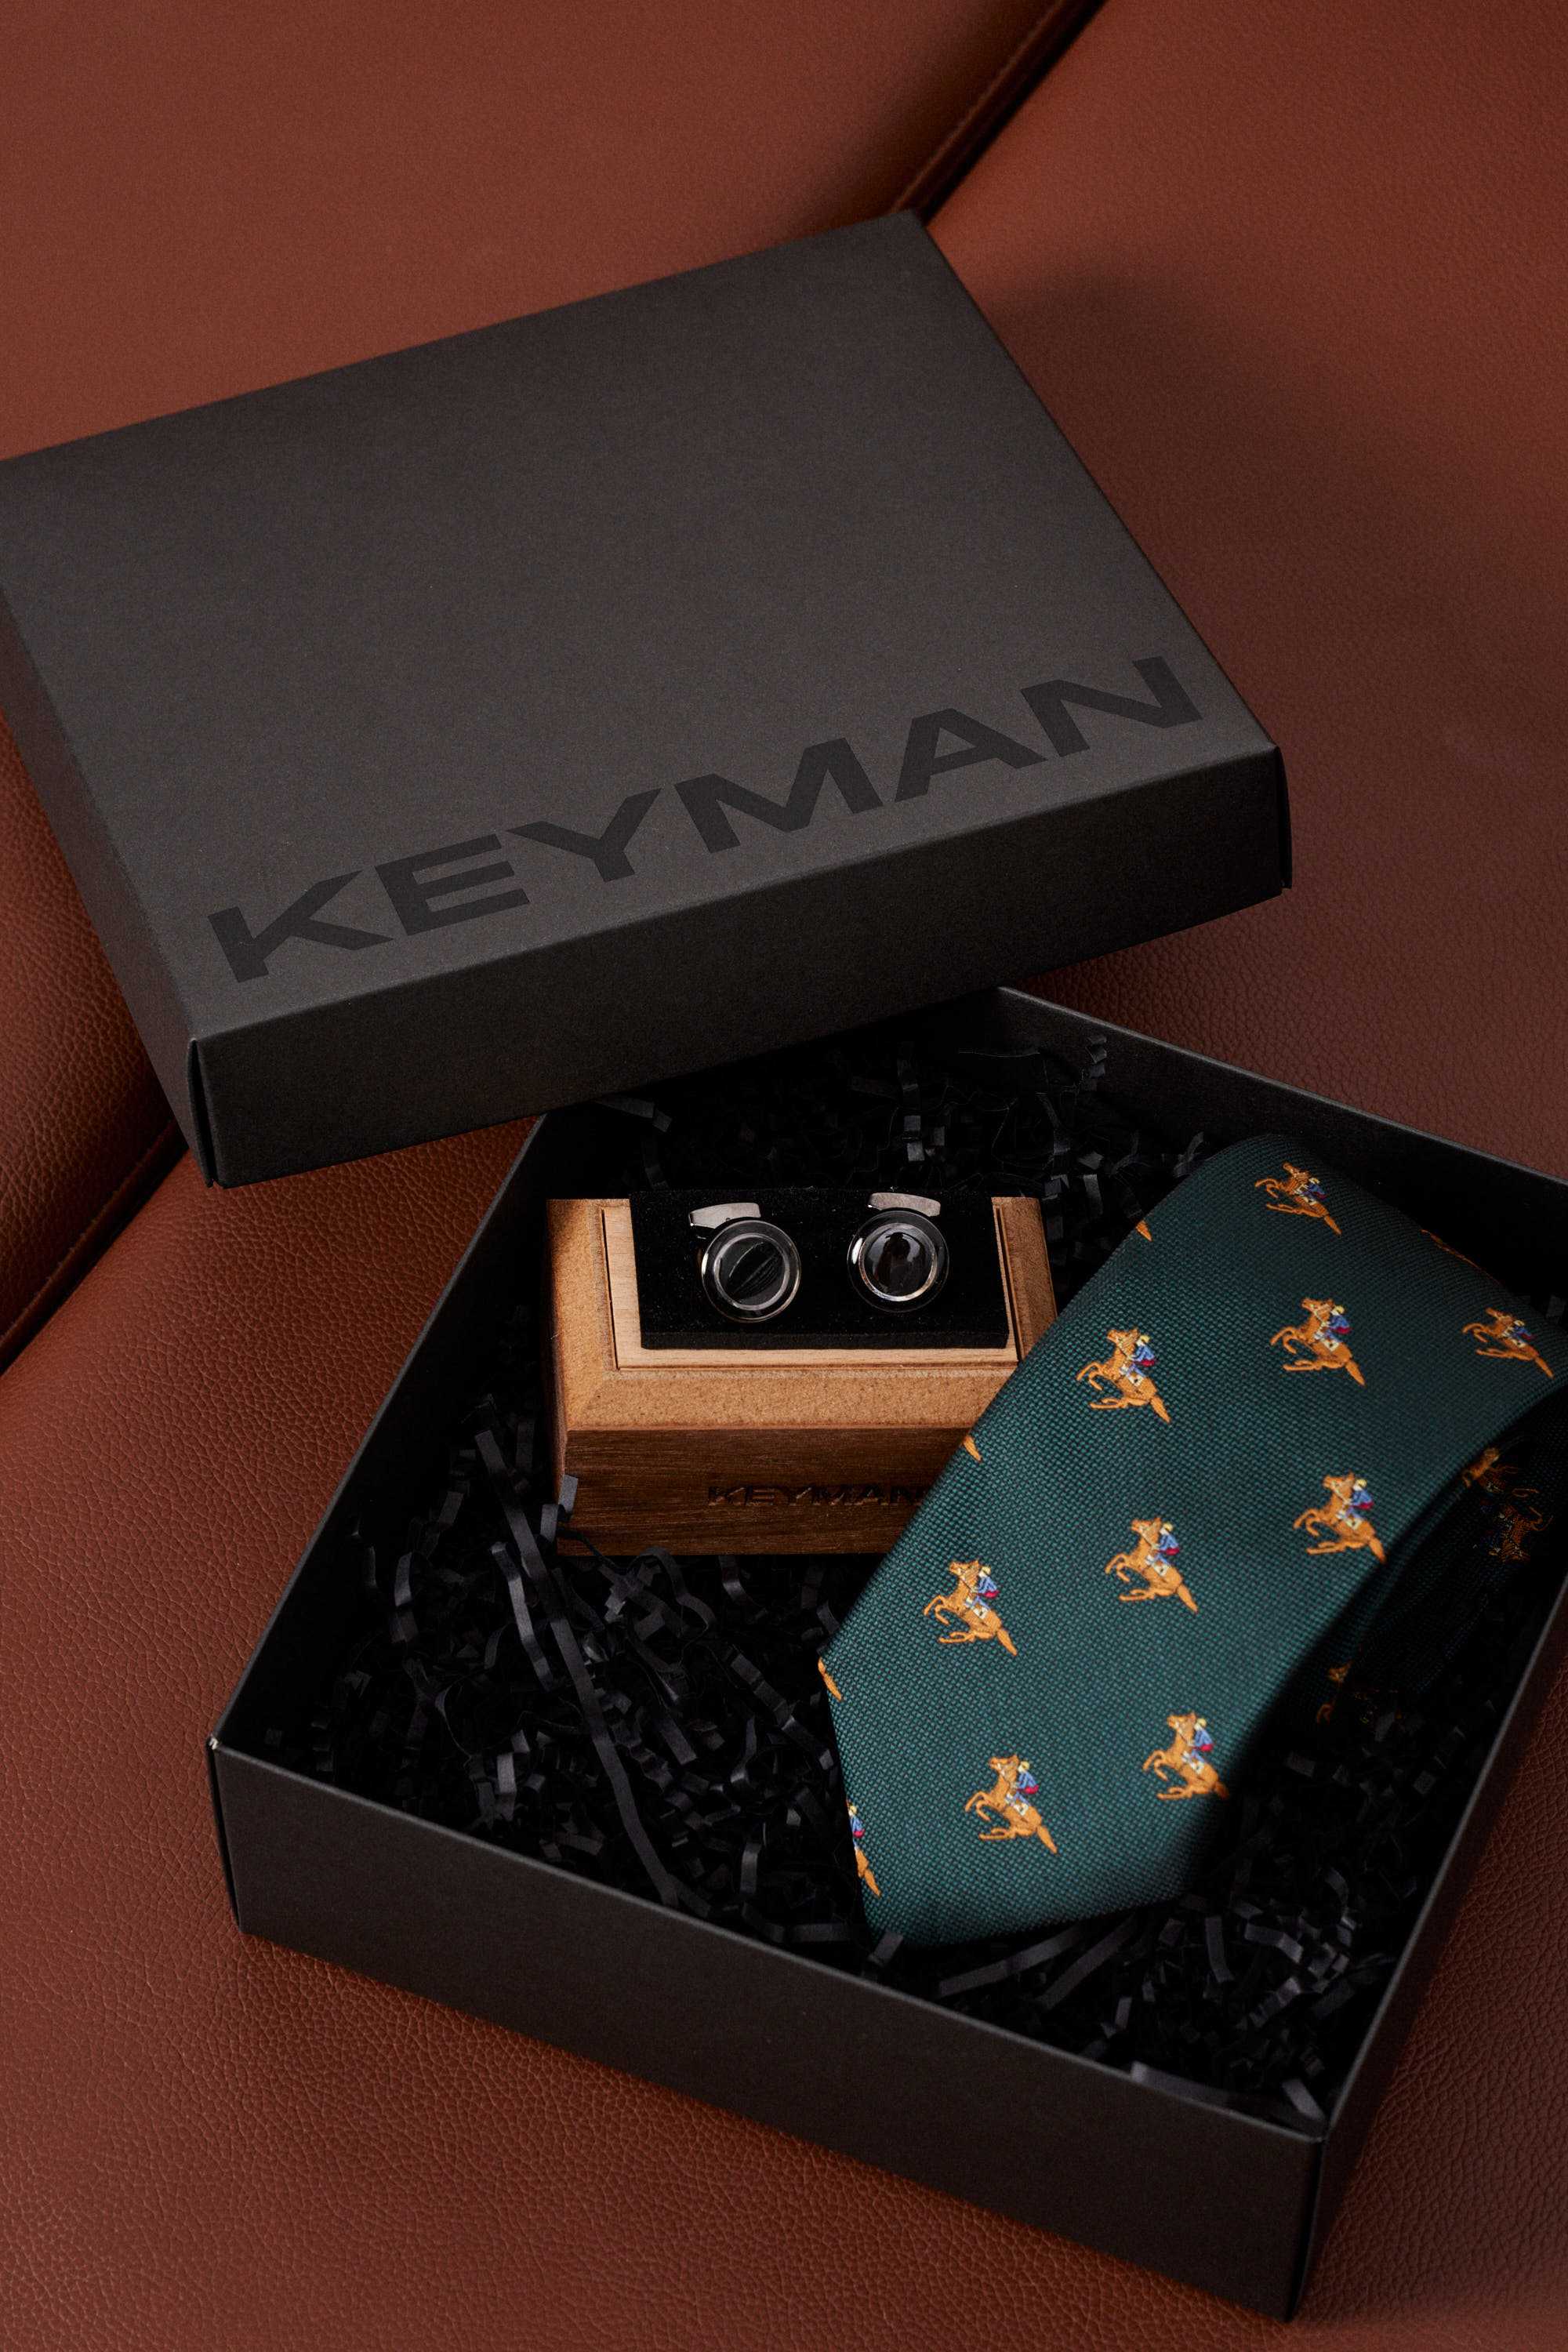 Пример подарочного набора Keyman (фирменная коробочка, галстук и запонки)